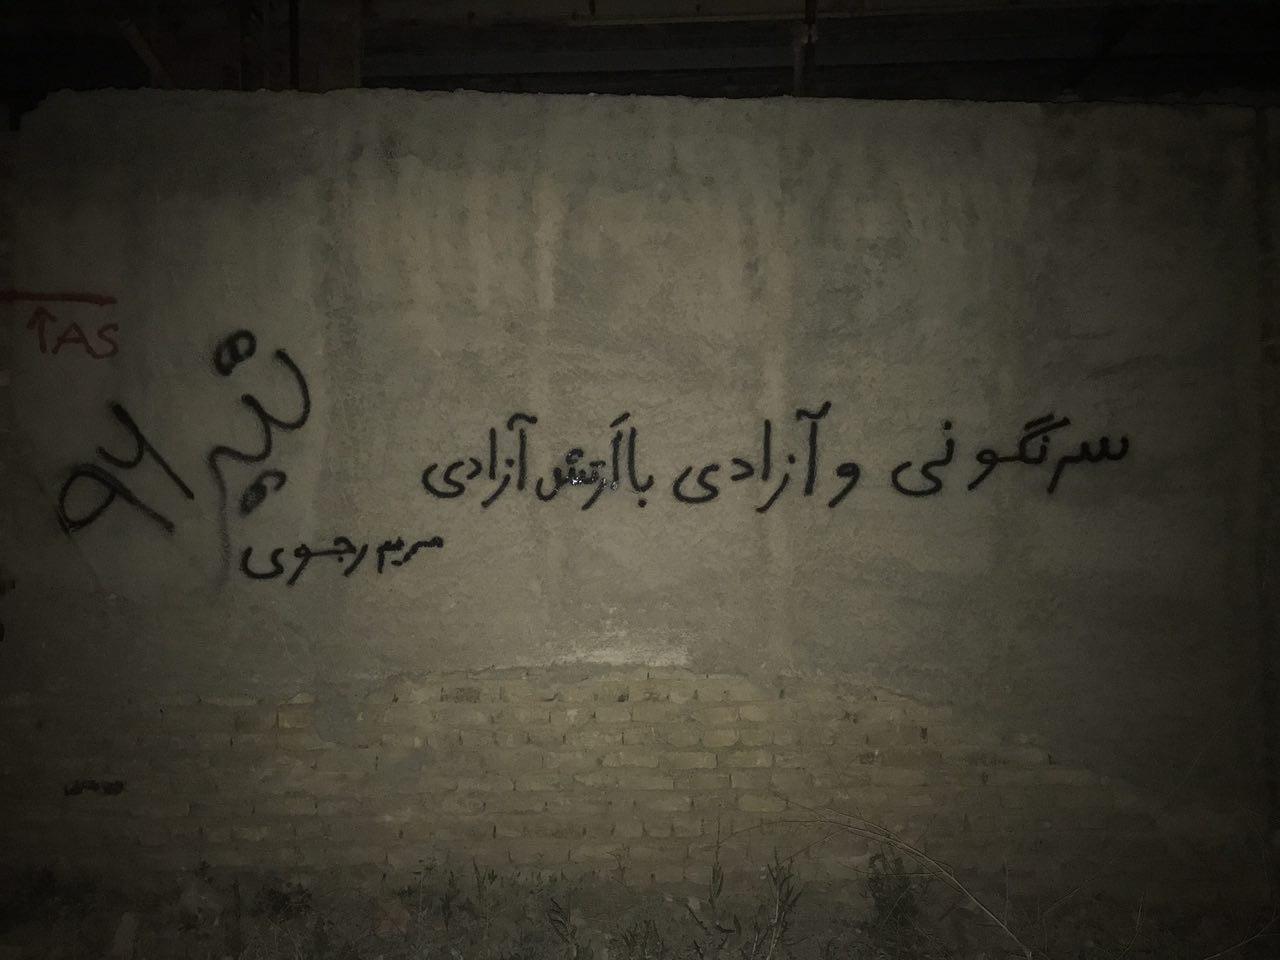 ارومیه: دیوارنویسی با شعار سرنگونی، سرنگونی و آزادی با ارتش آزادی، مریم رجوی تیر 96